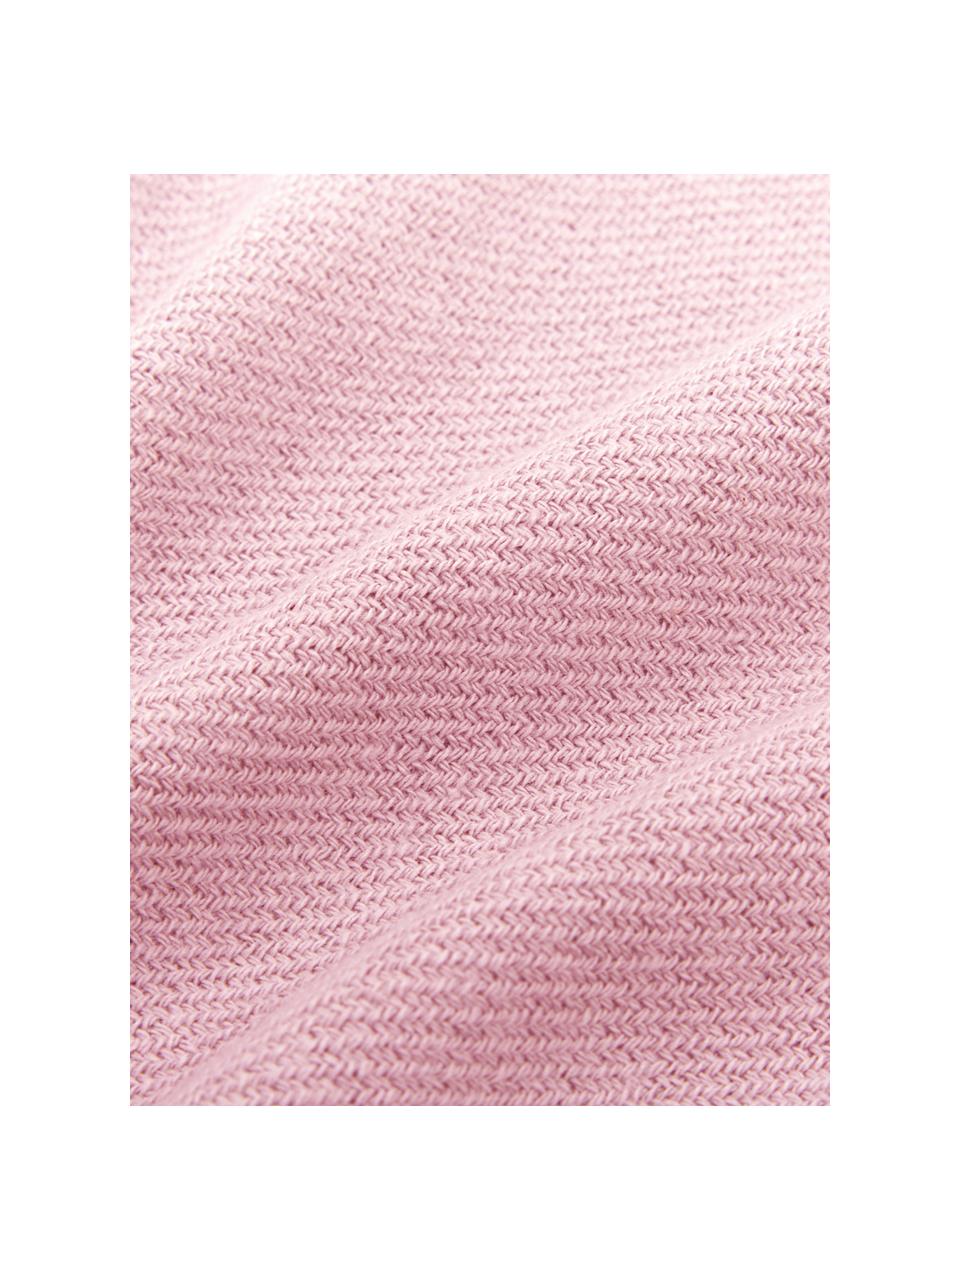 Einfarbige Baumwolldecke Madison in Rosa mit Fransenabschluss, 100% Baumwolle, Rosa, 140 x 170 cm